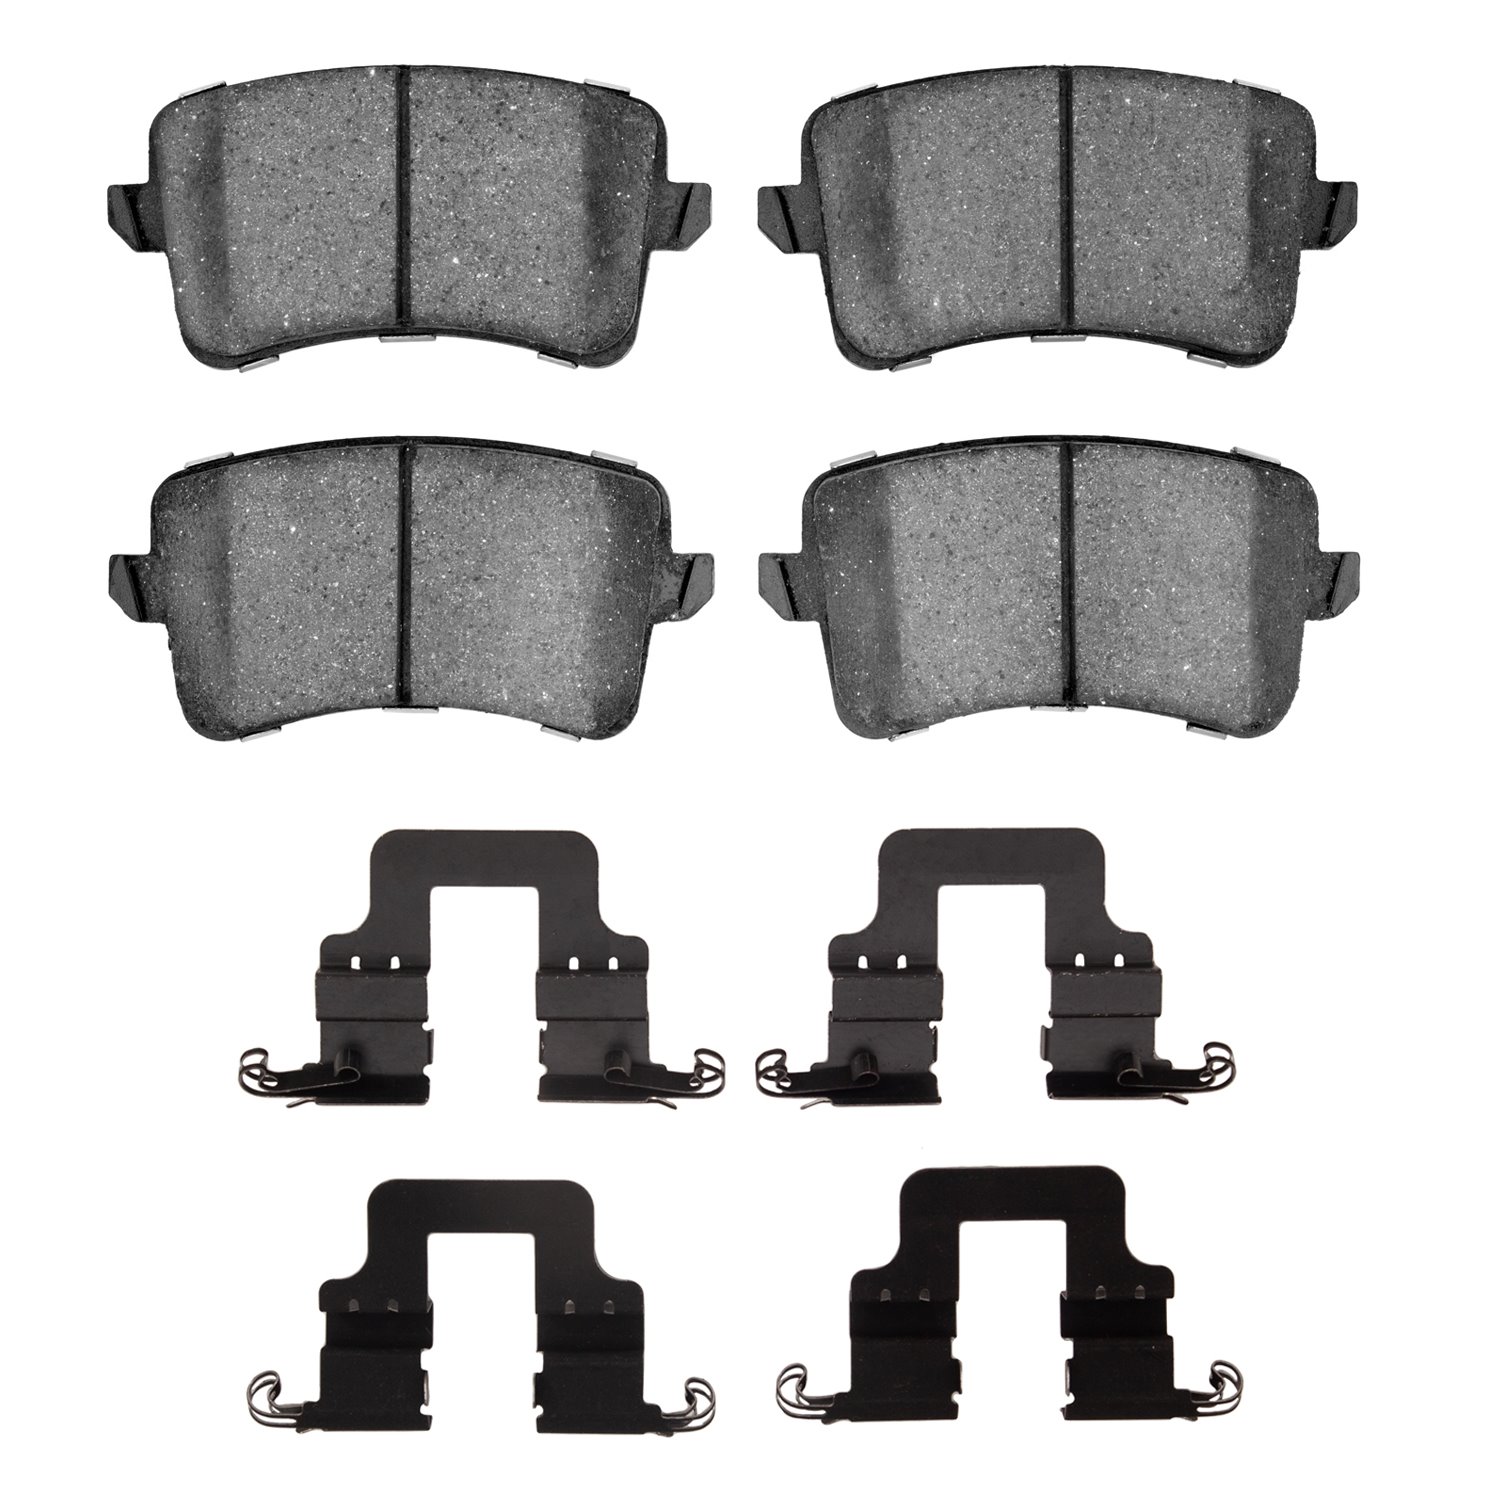 1551-1386-01 5000 Advanced Low-Metallic Brake Pads & Hardware Kit, 2008-2016 Audi/Volkswagen, Position: Rear